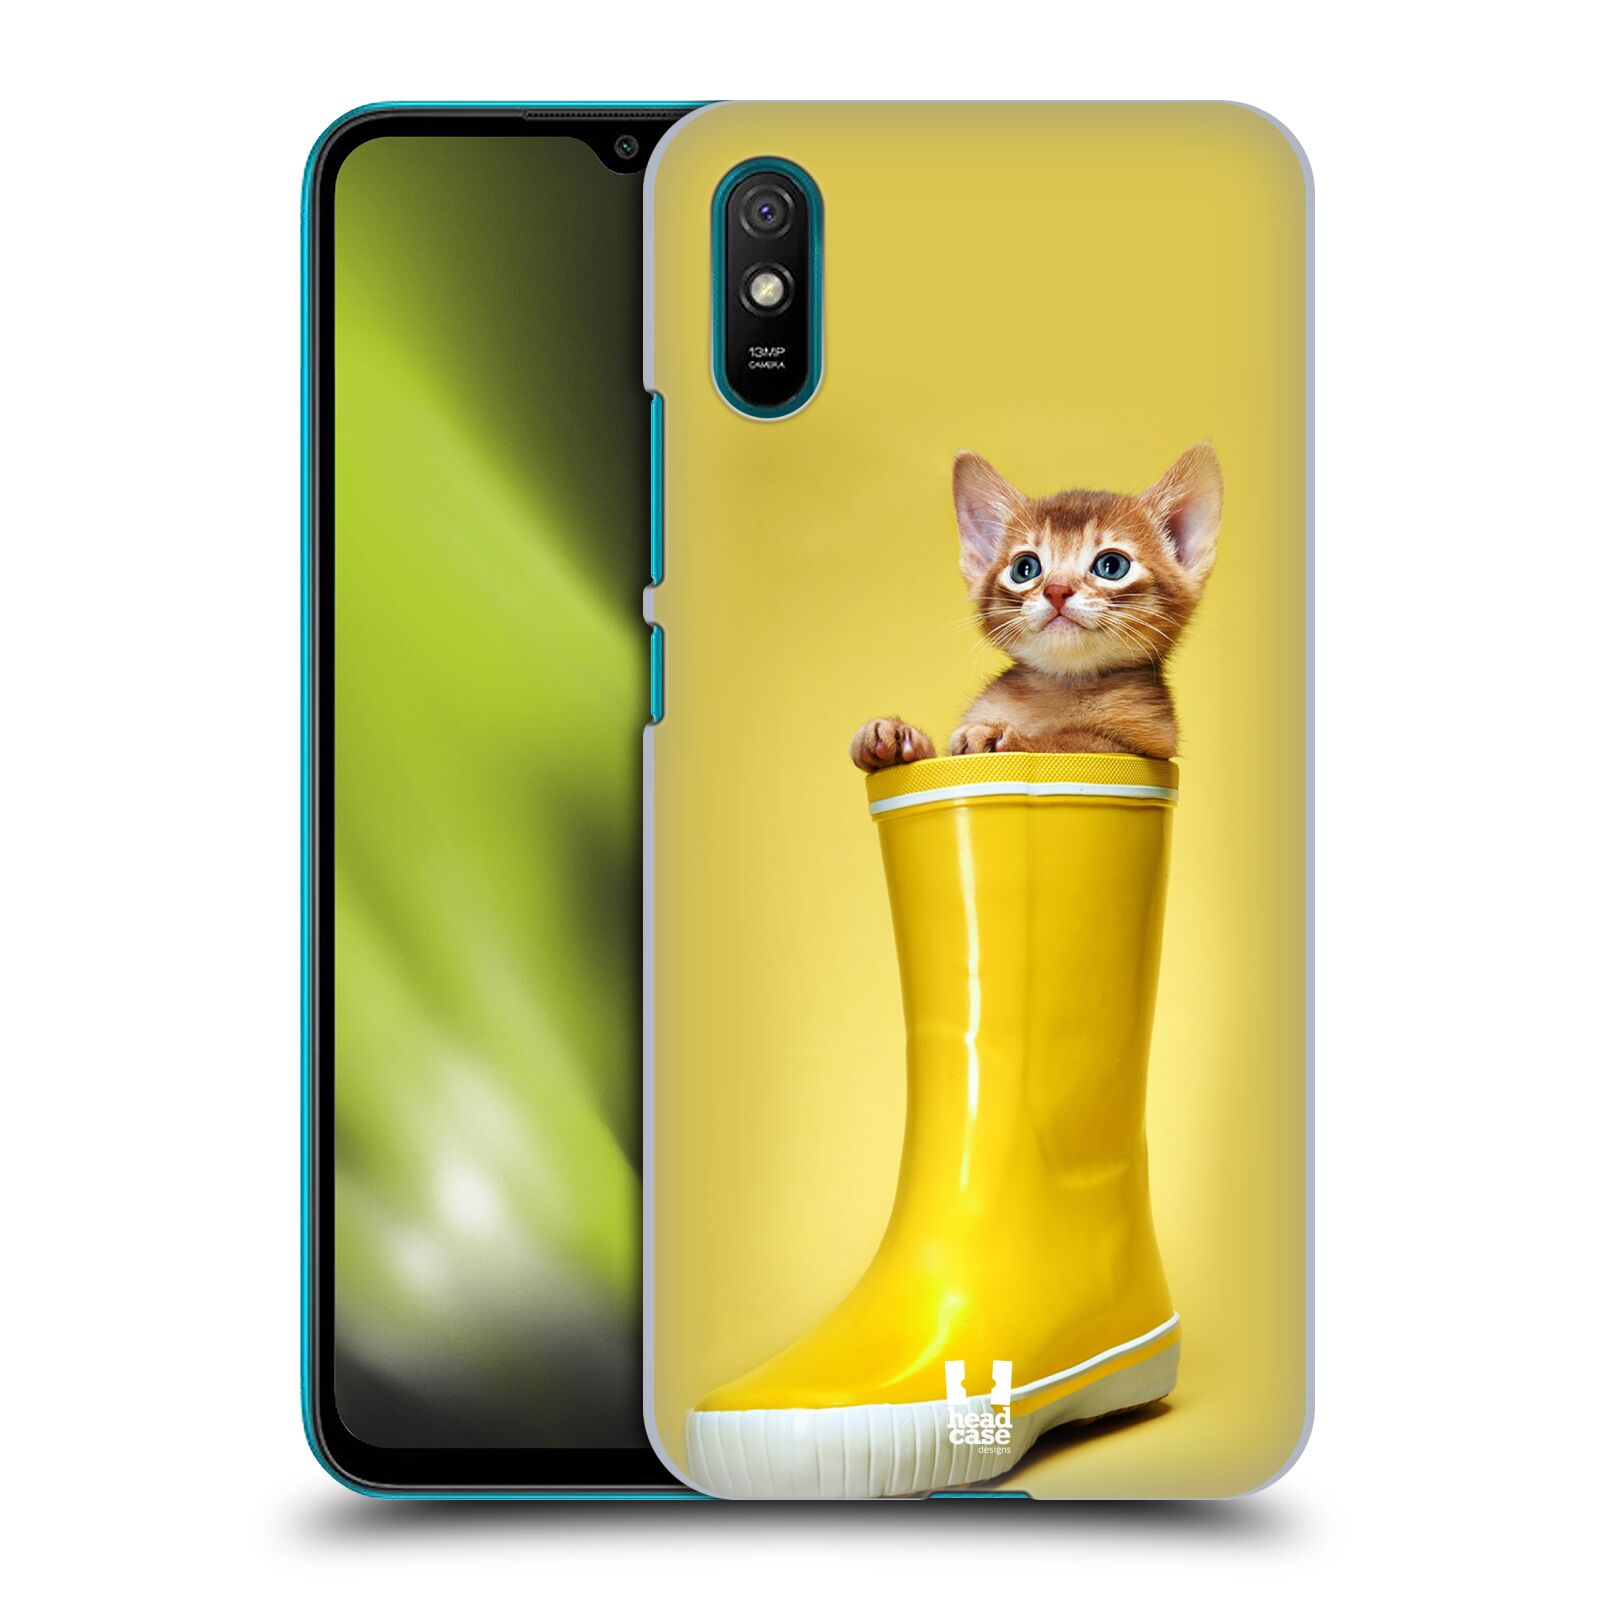 Plastový obal HEAD CASE na mobil Xiaomi Redmi 9A / 9AT vzor Legrační zvířátka kotě v botě žlutá